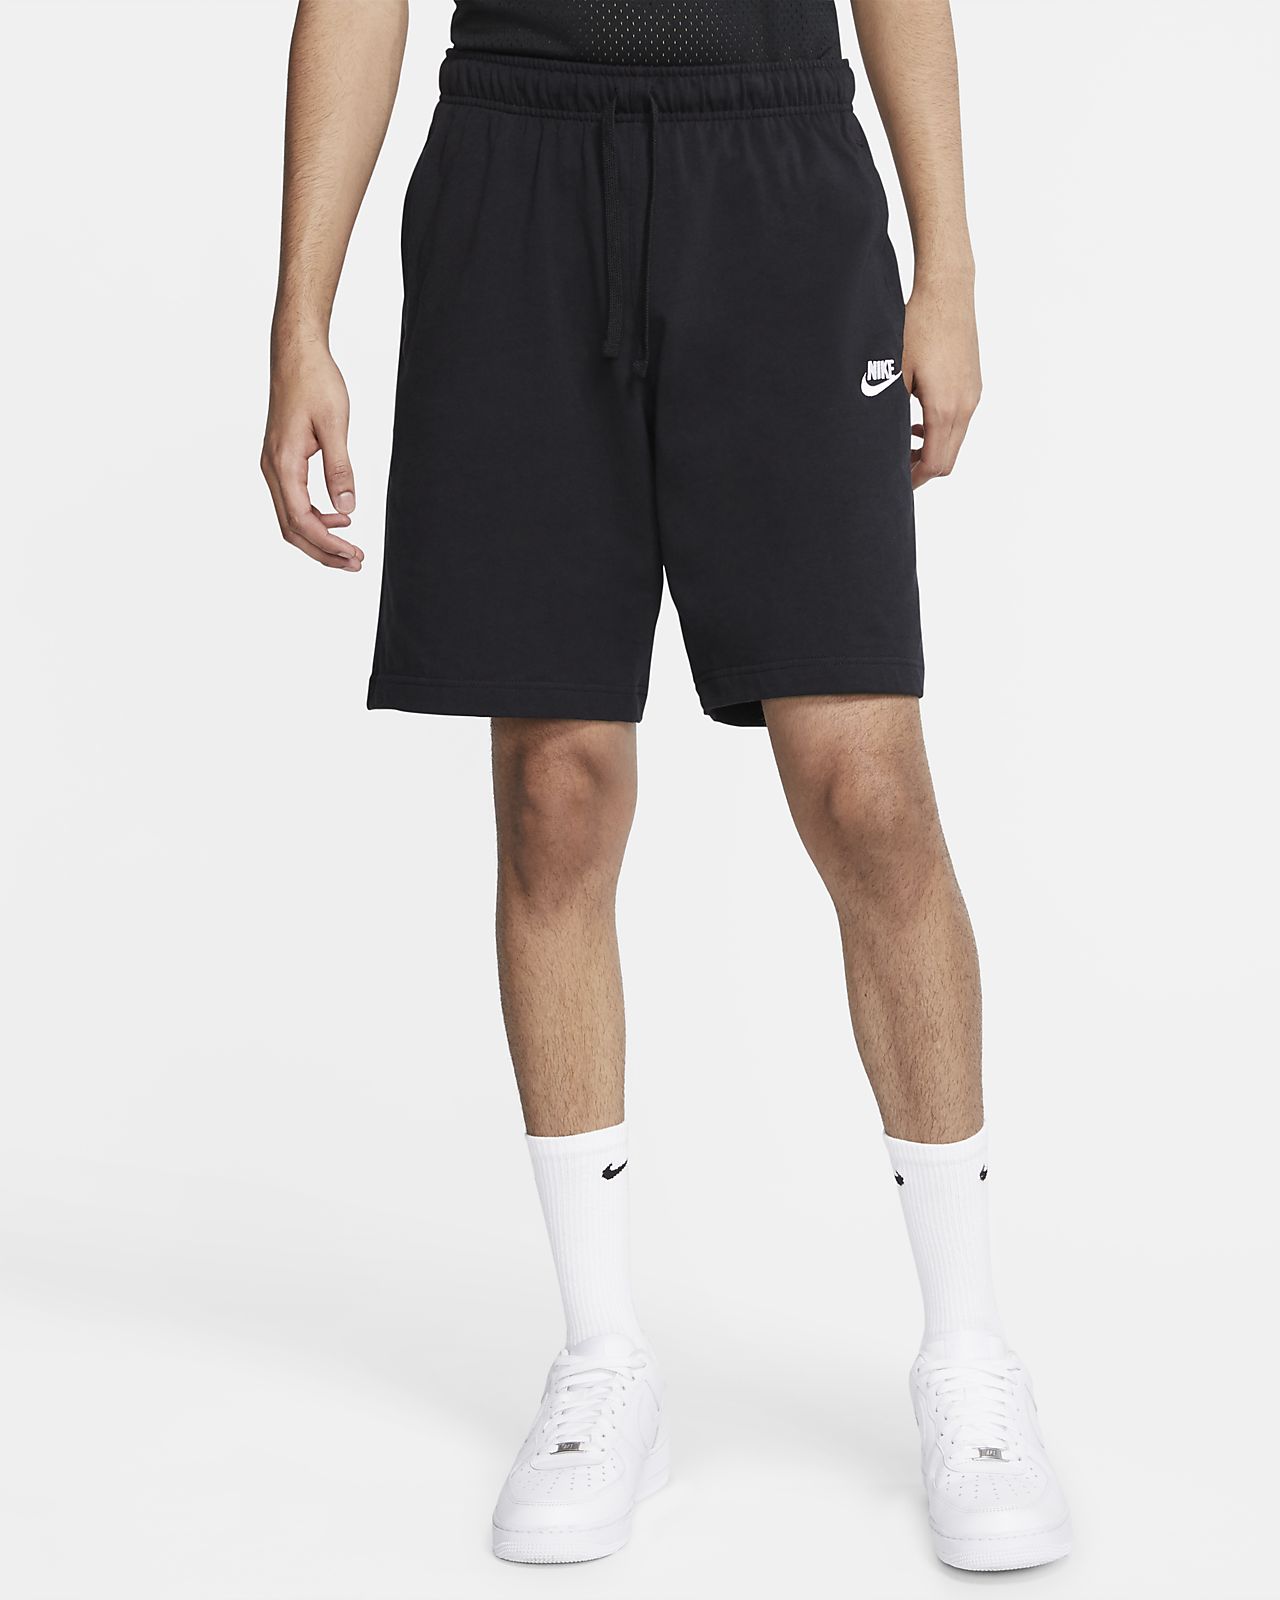 Nike Board Shorts Size Chart